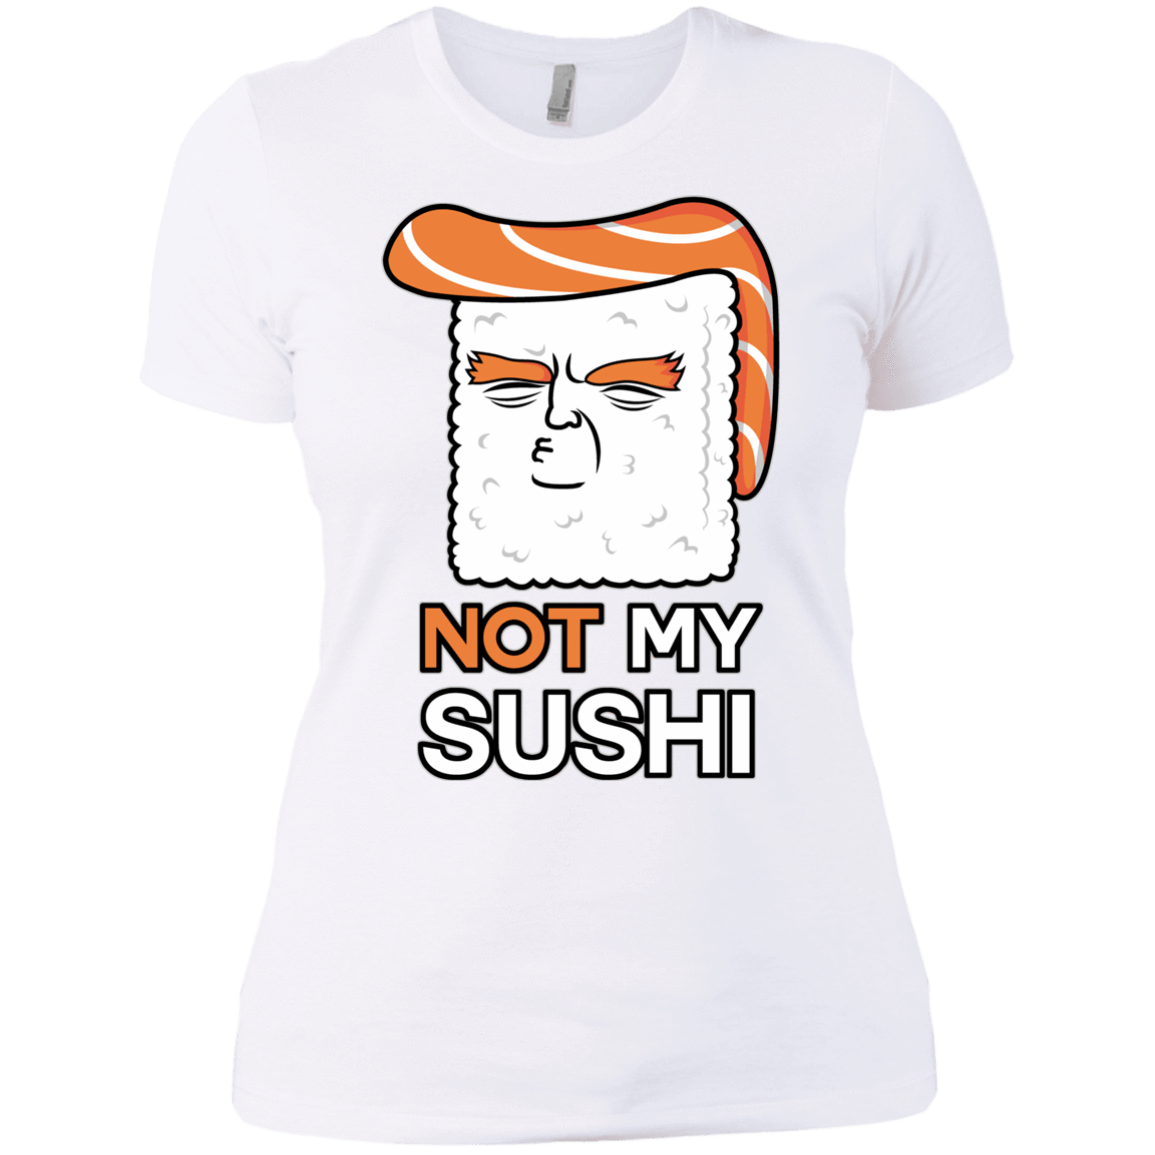 T-Shirts White / X-Small Not My Sushi Women's Premium T-Shirt